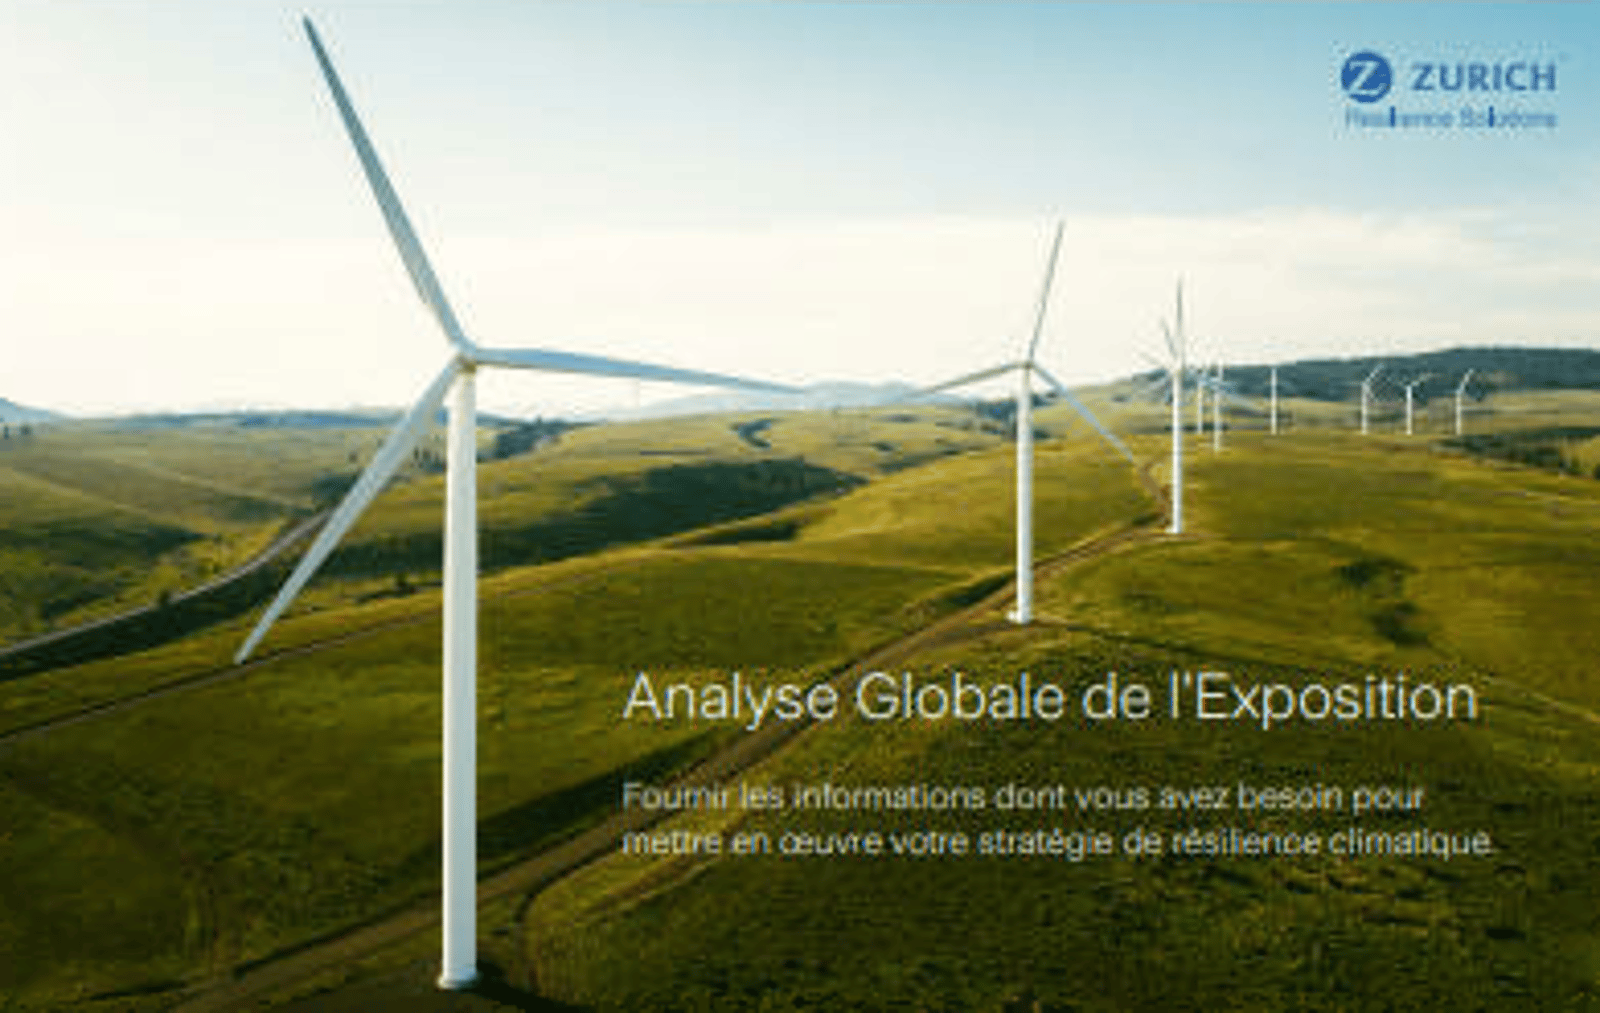 Global Exposure Analysis Factsheet